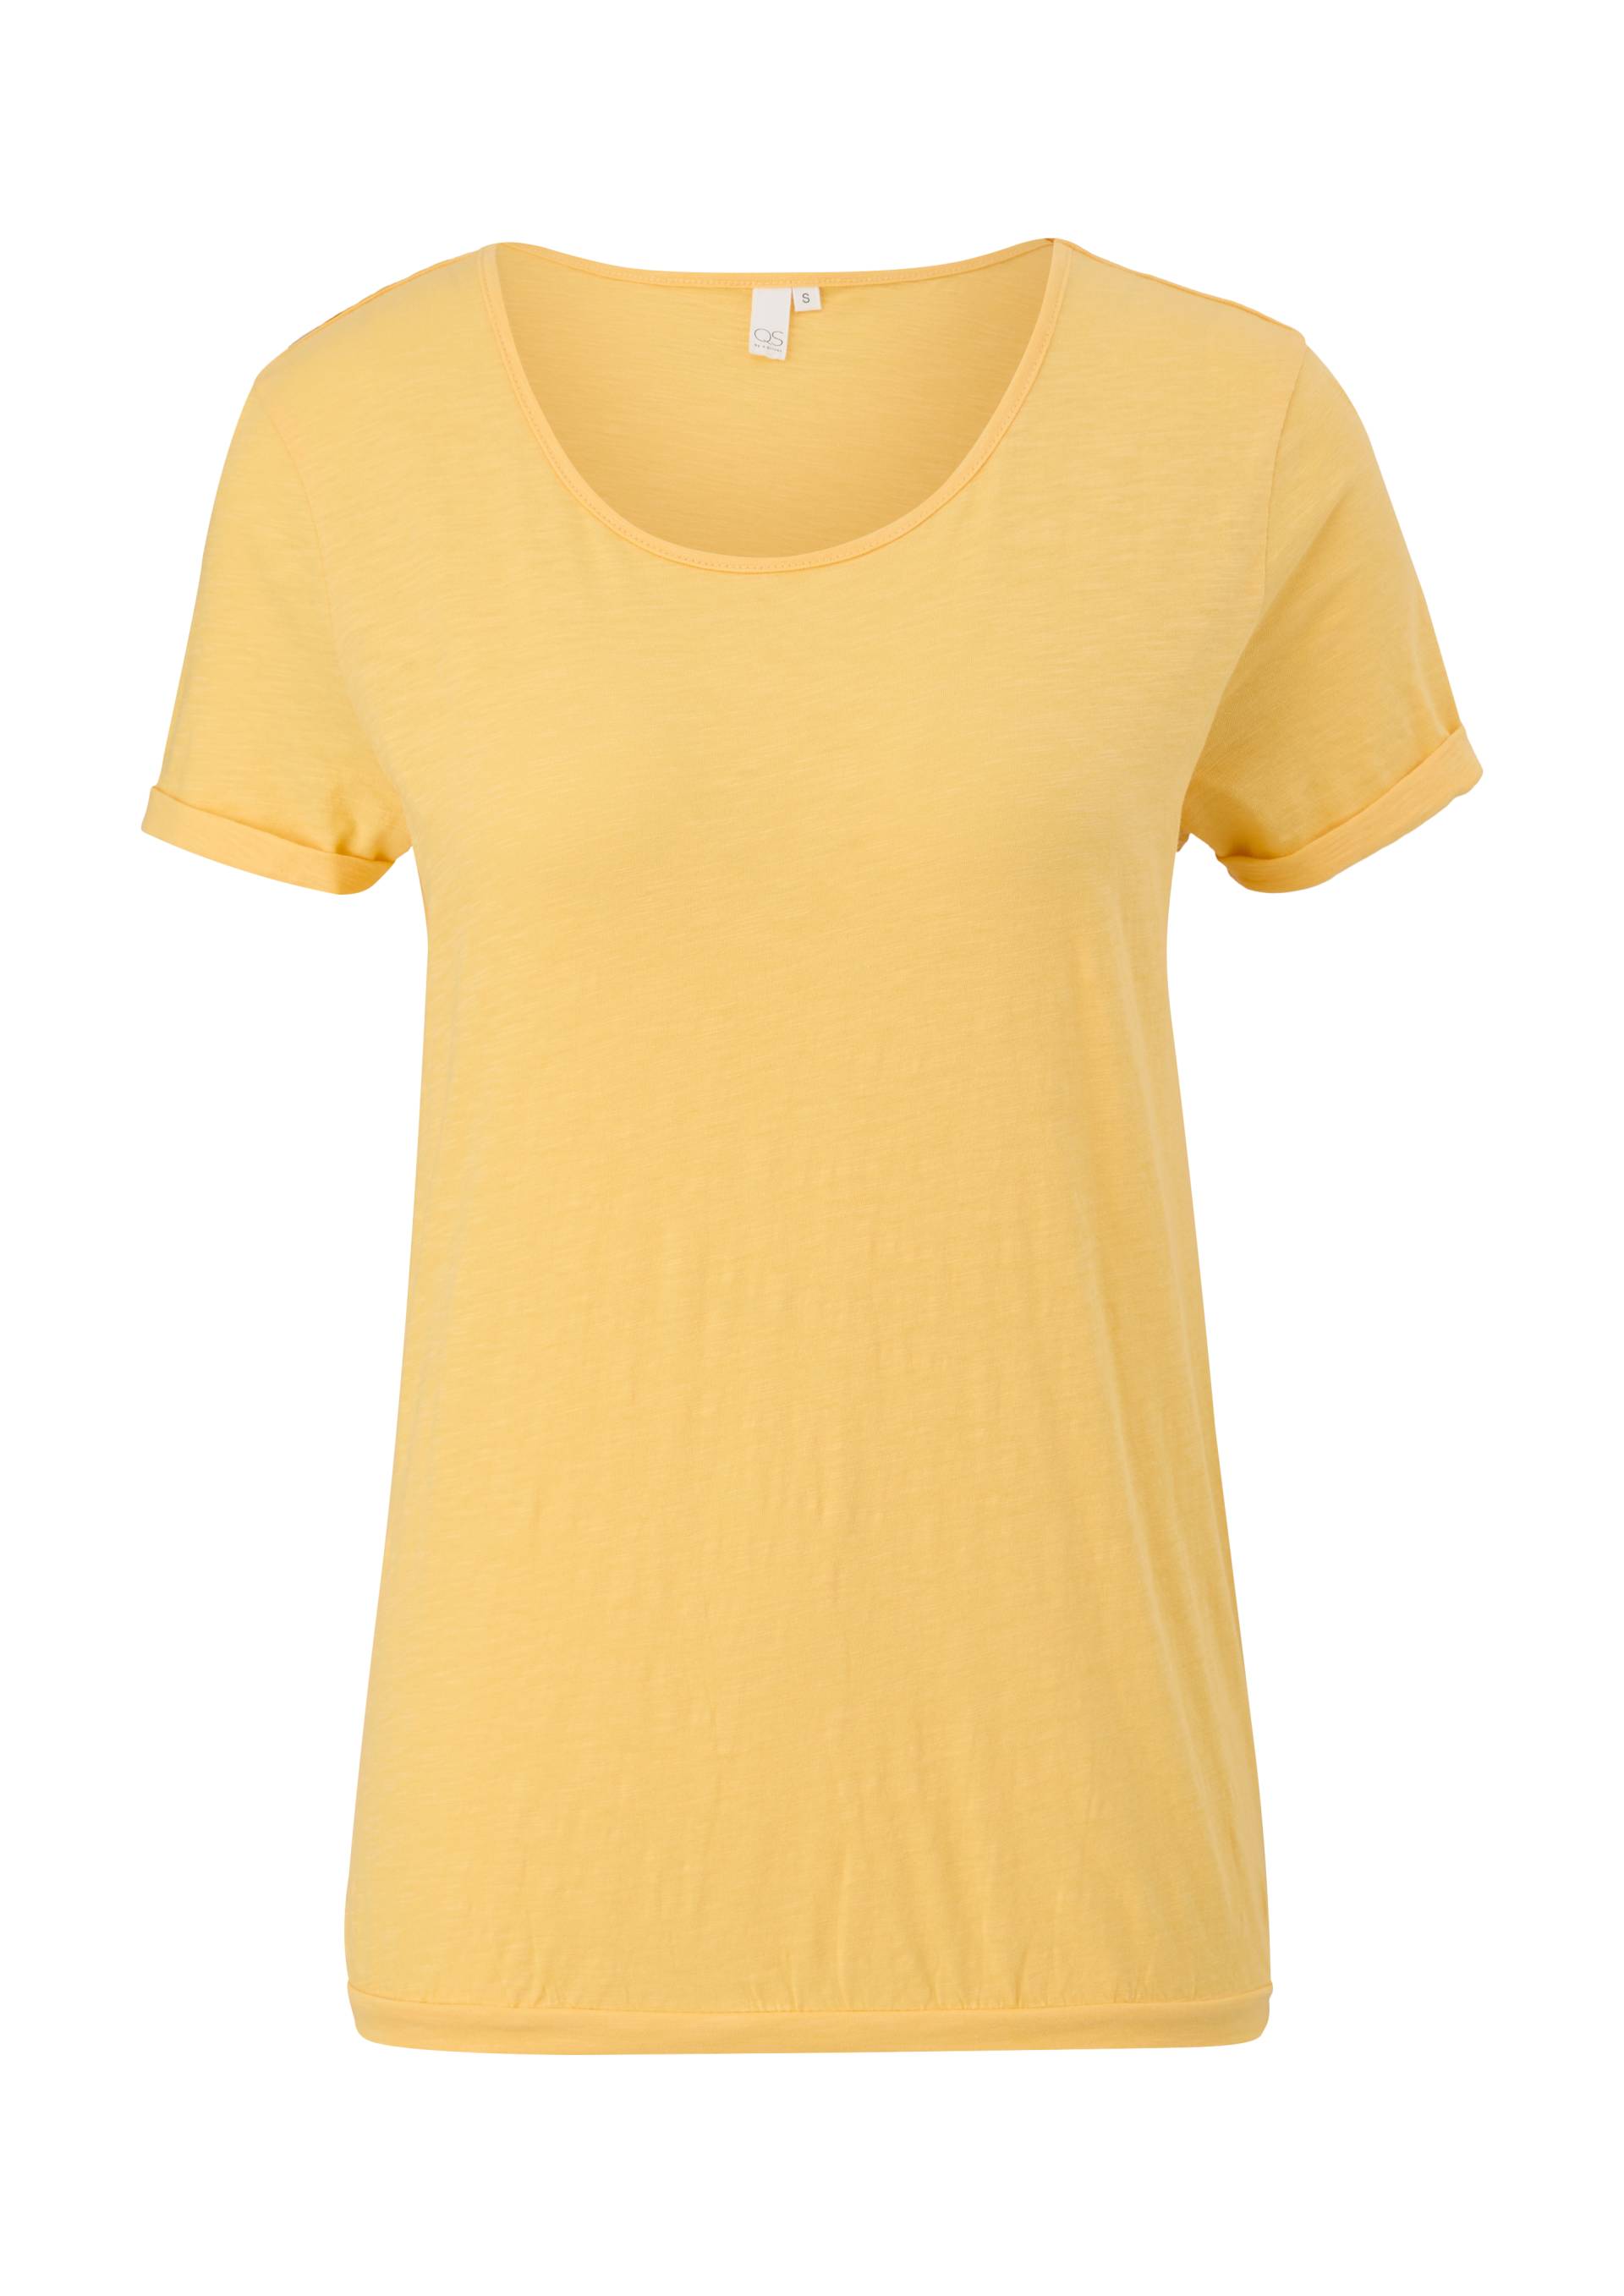 QS - Baumwollshirt in O-Shape, Damen, gelb von QS